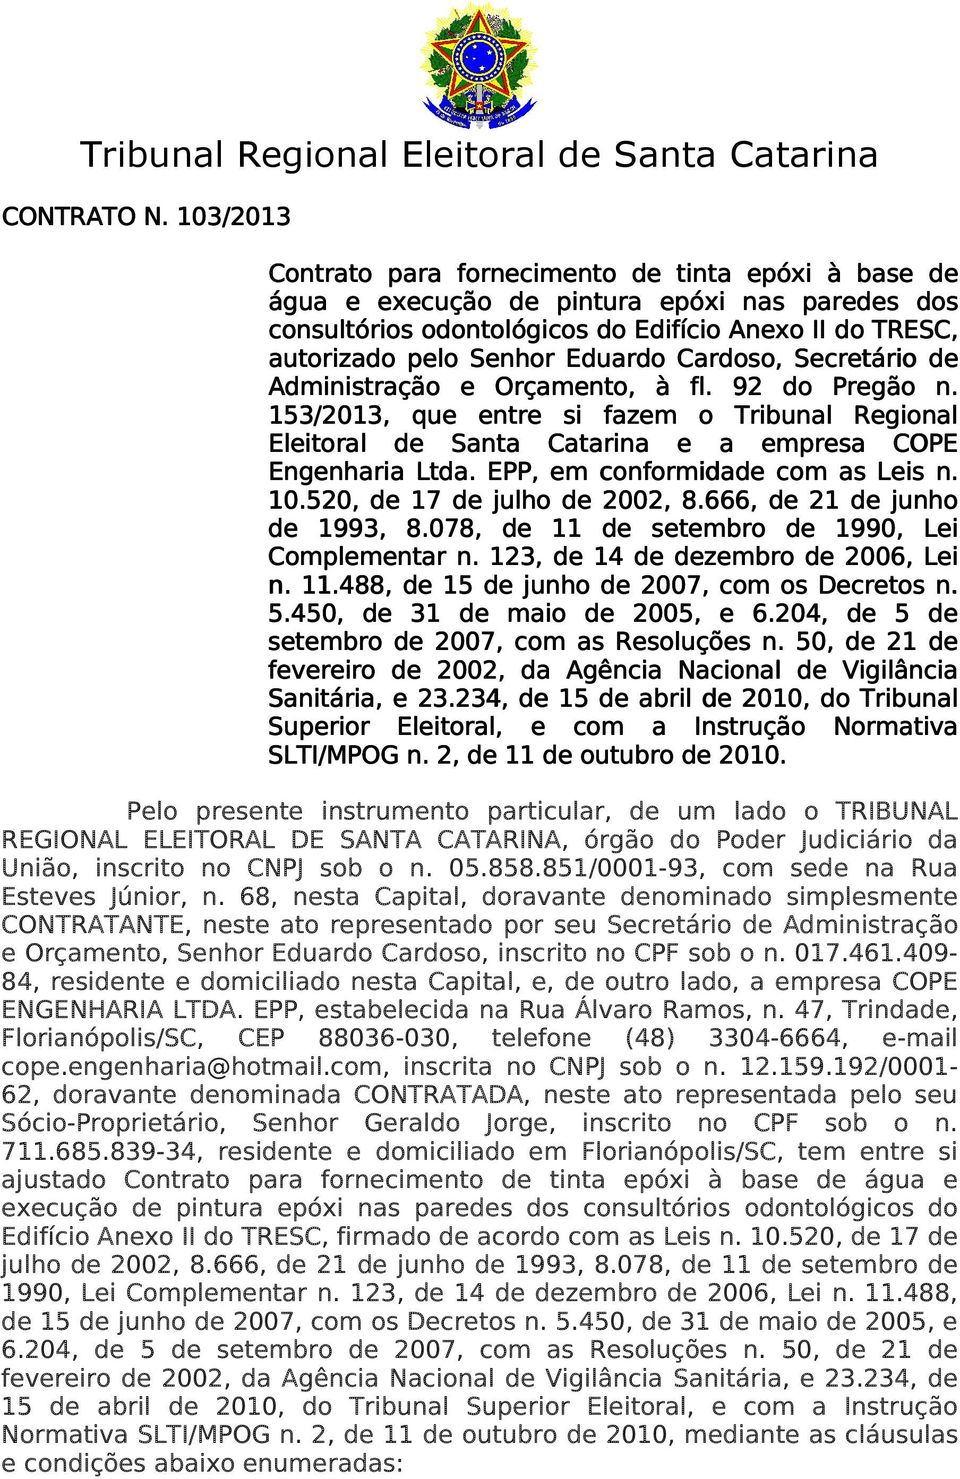 Cardoso,, Secretário de Administração e Orçamento, à fl. 92 do Pregão n. 153/2013, que entre si fazem o Tribunal Regional Eleitoral de Santa Catarina e a empresa COPE Engenharia Ltda.